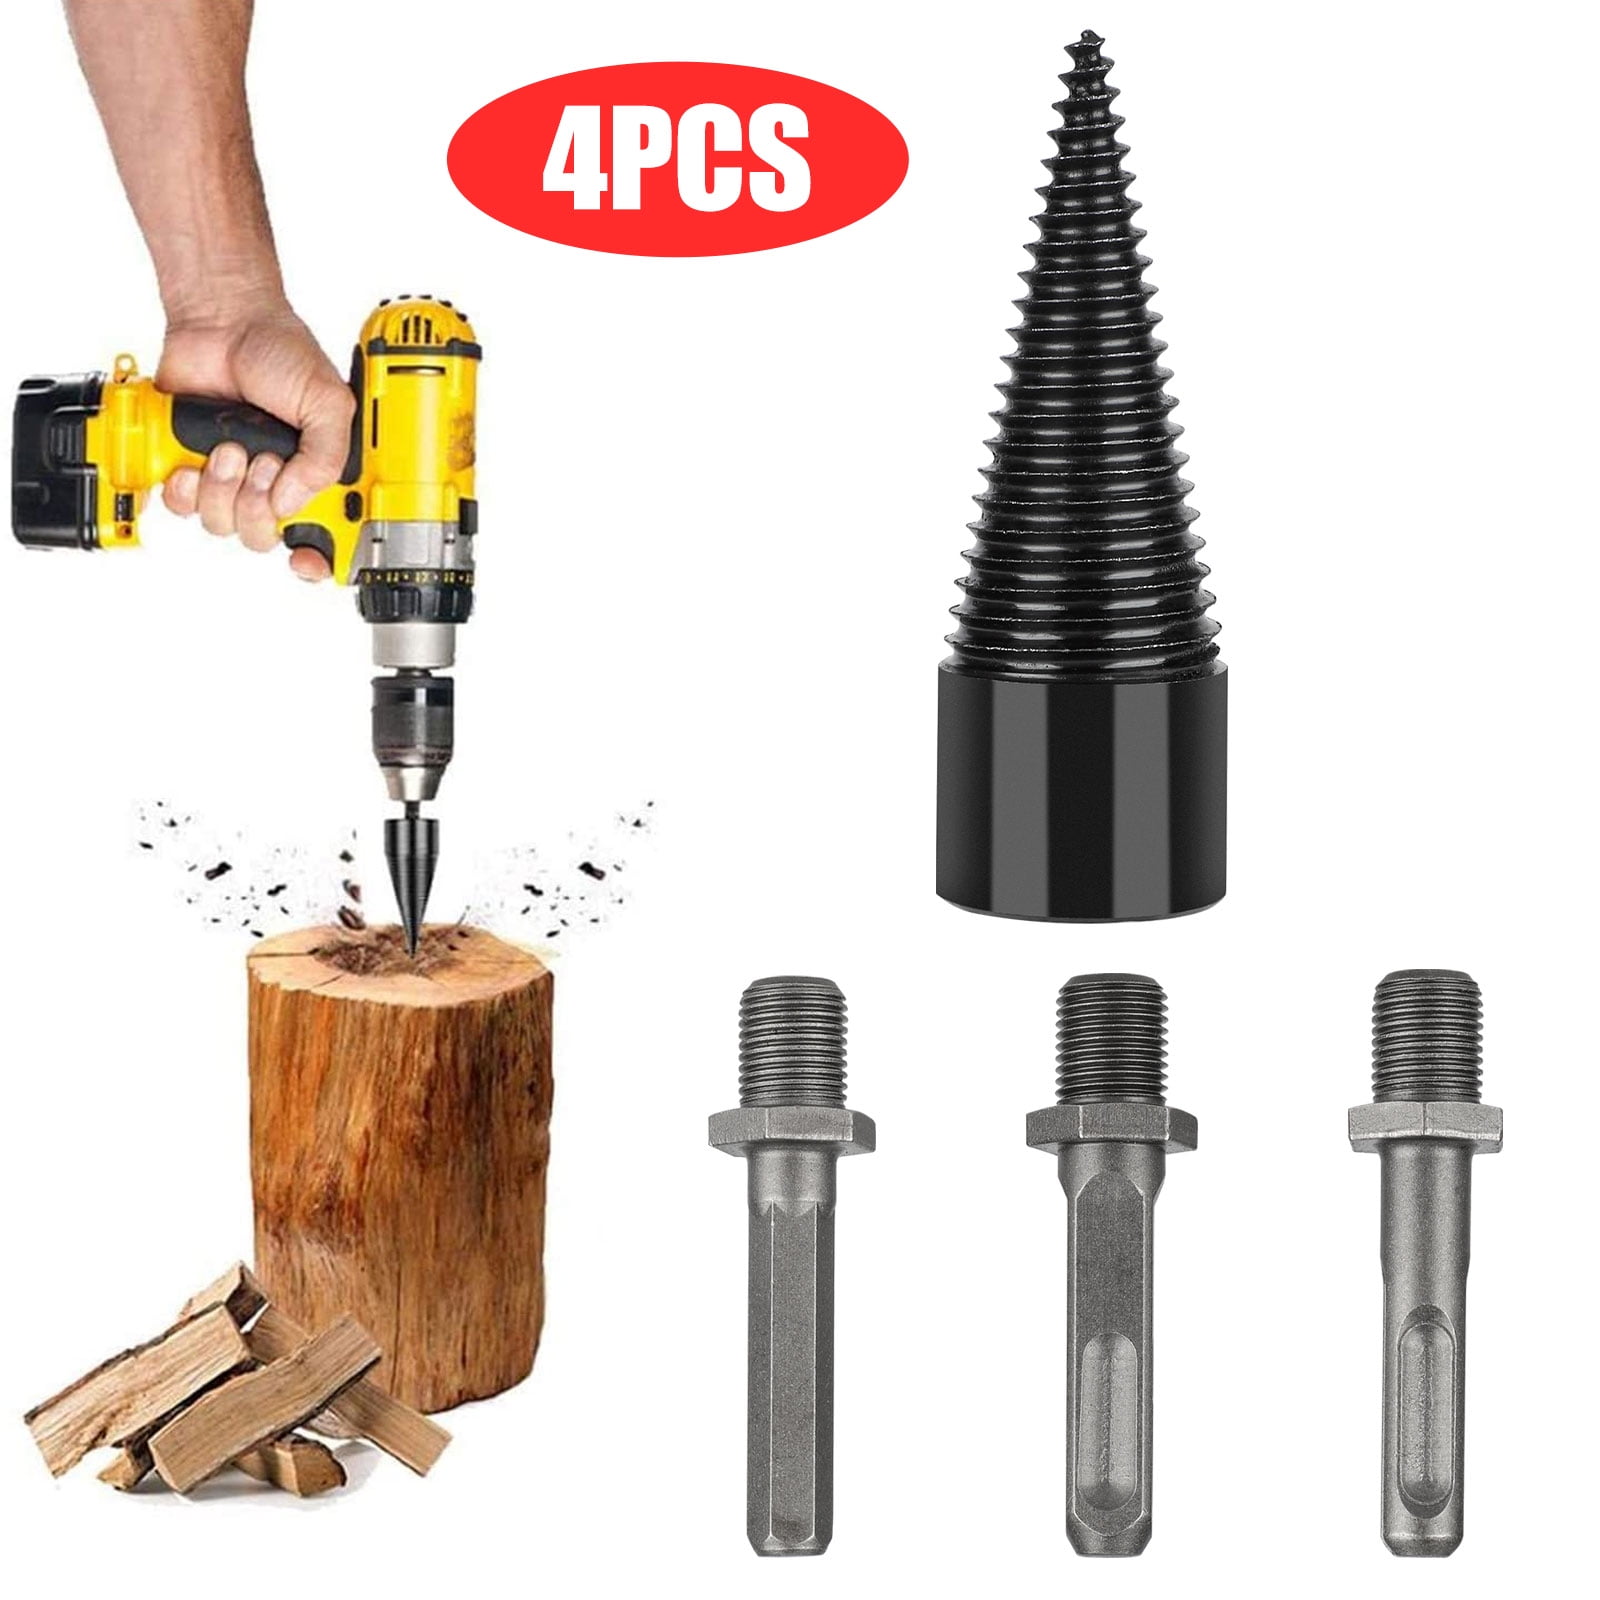 Wood Firewood Log Splitter Screw Splitting Drill Bit Handful Power Tool Kit~